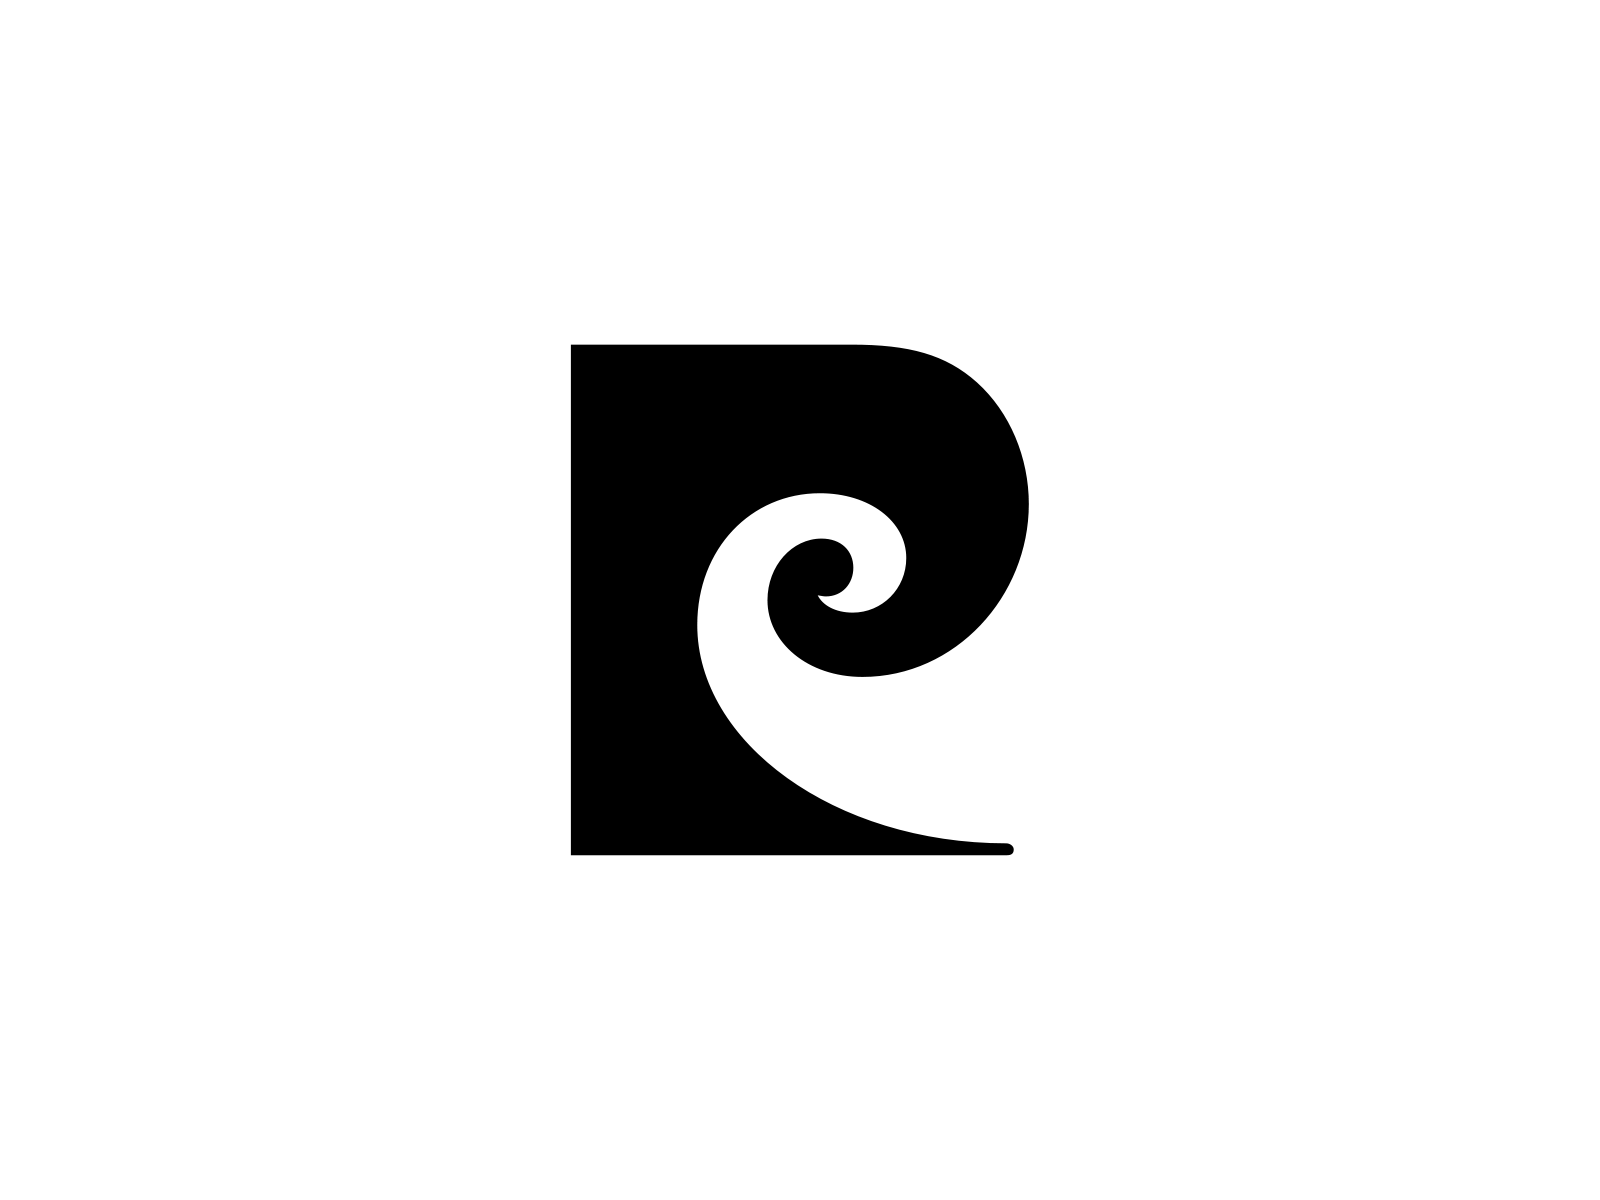 Pierre Cardin Logo - Pluspng